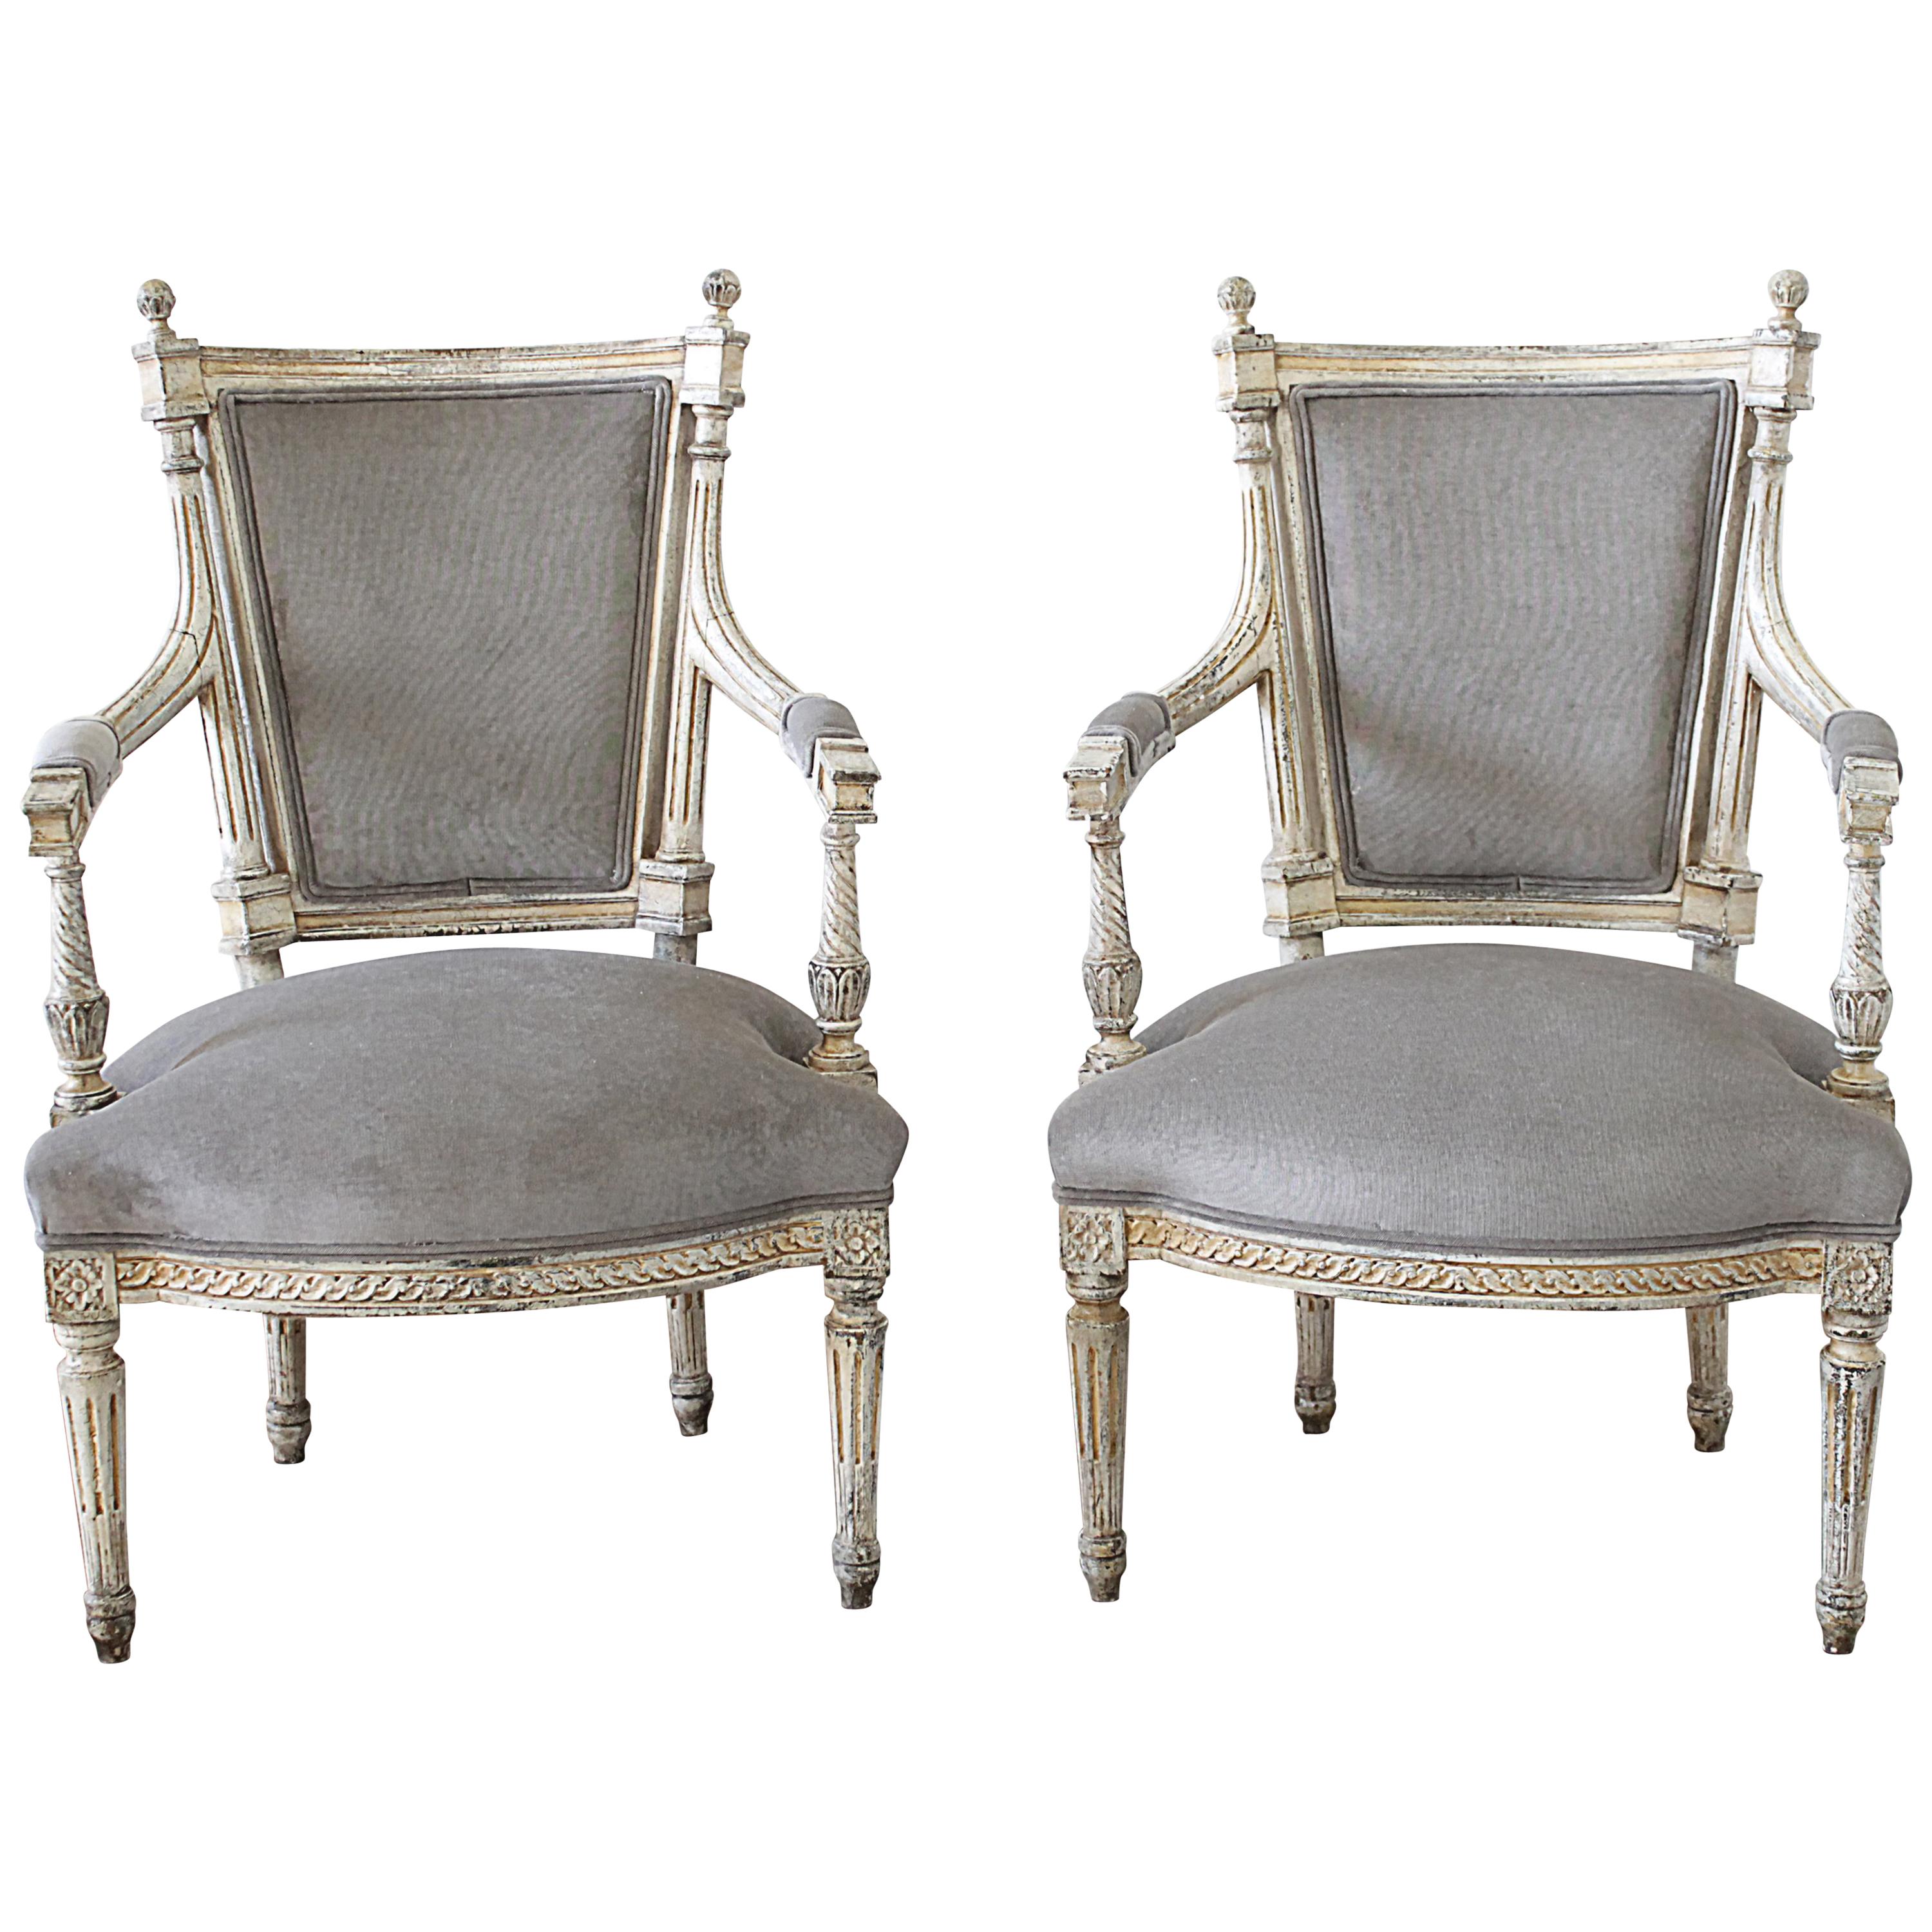 Paire de fauteuils à bras ouverts de style Louis XVI du 19ème siècle peints et tapissés